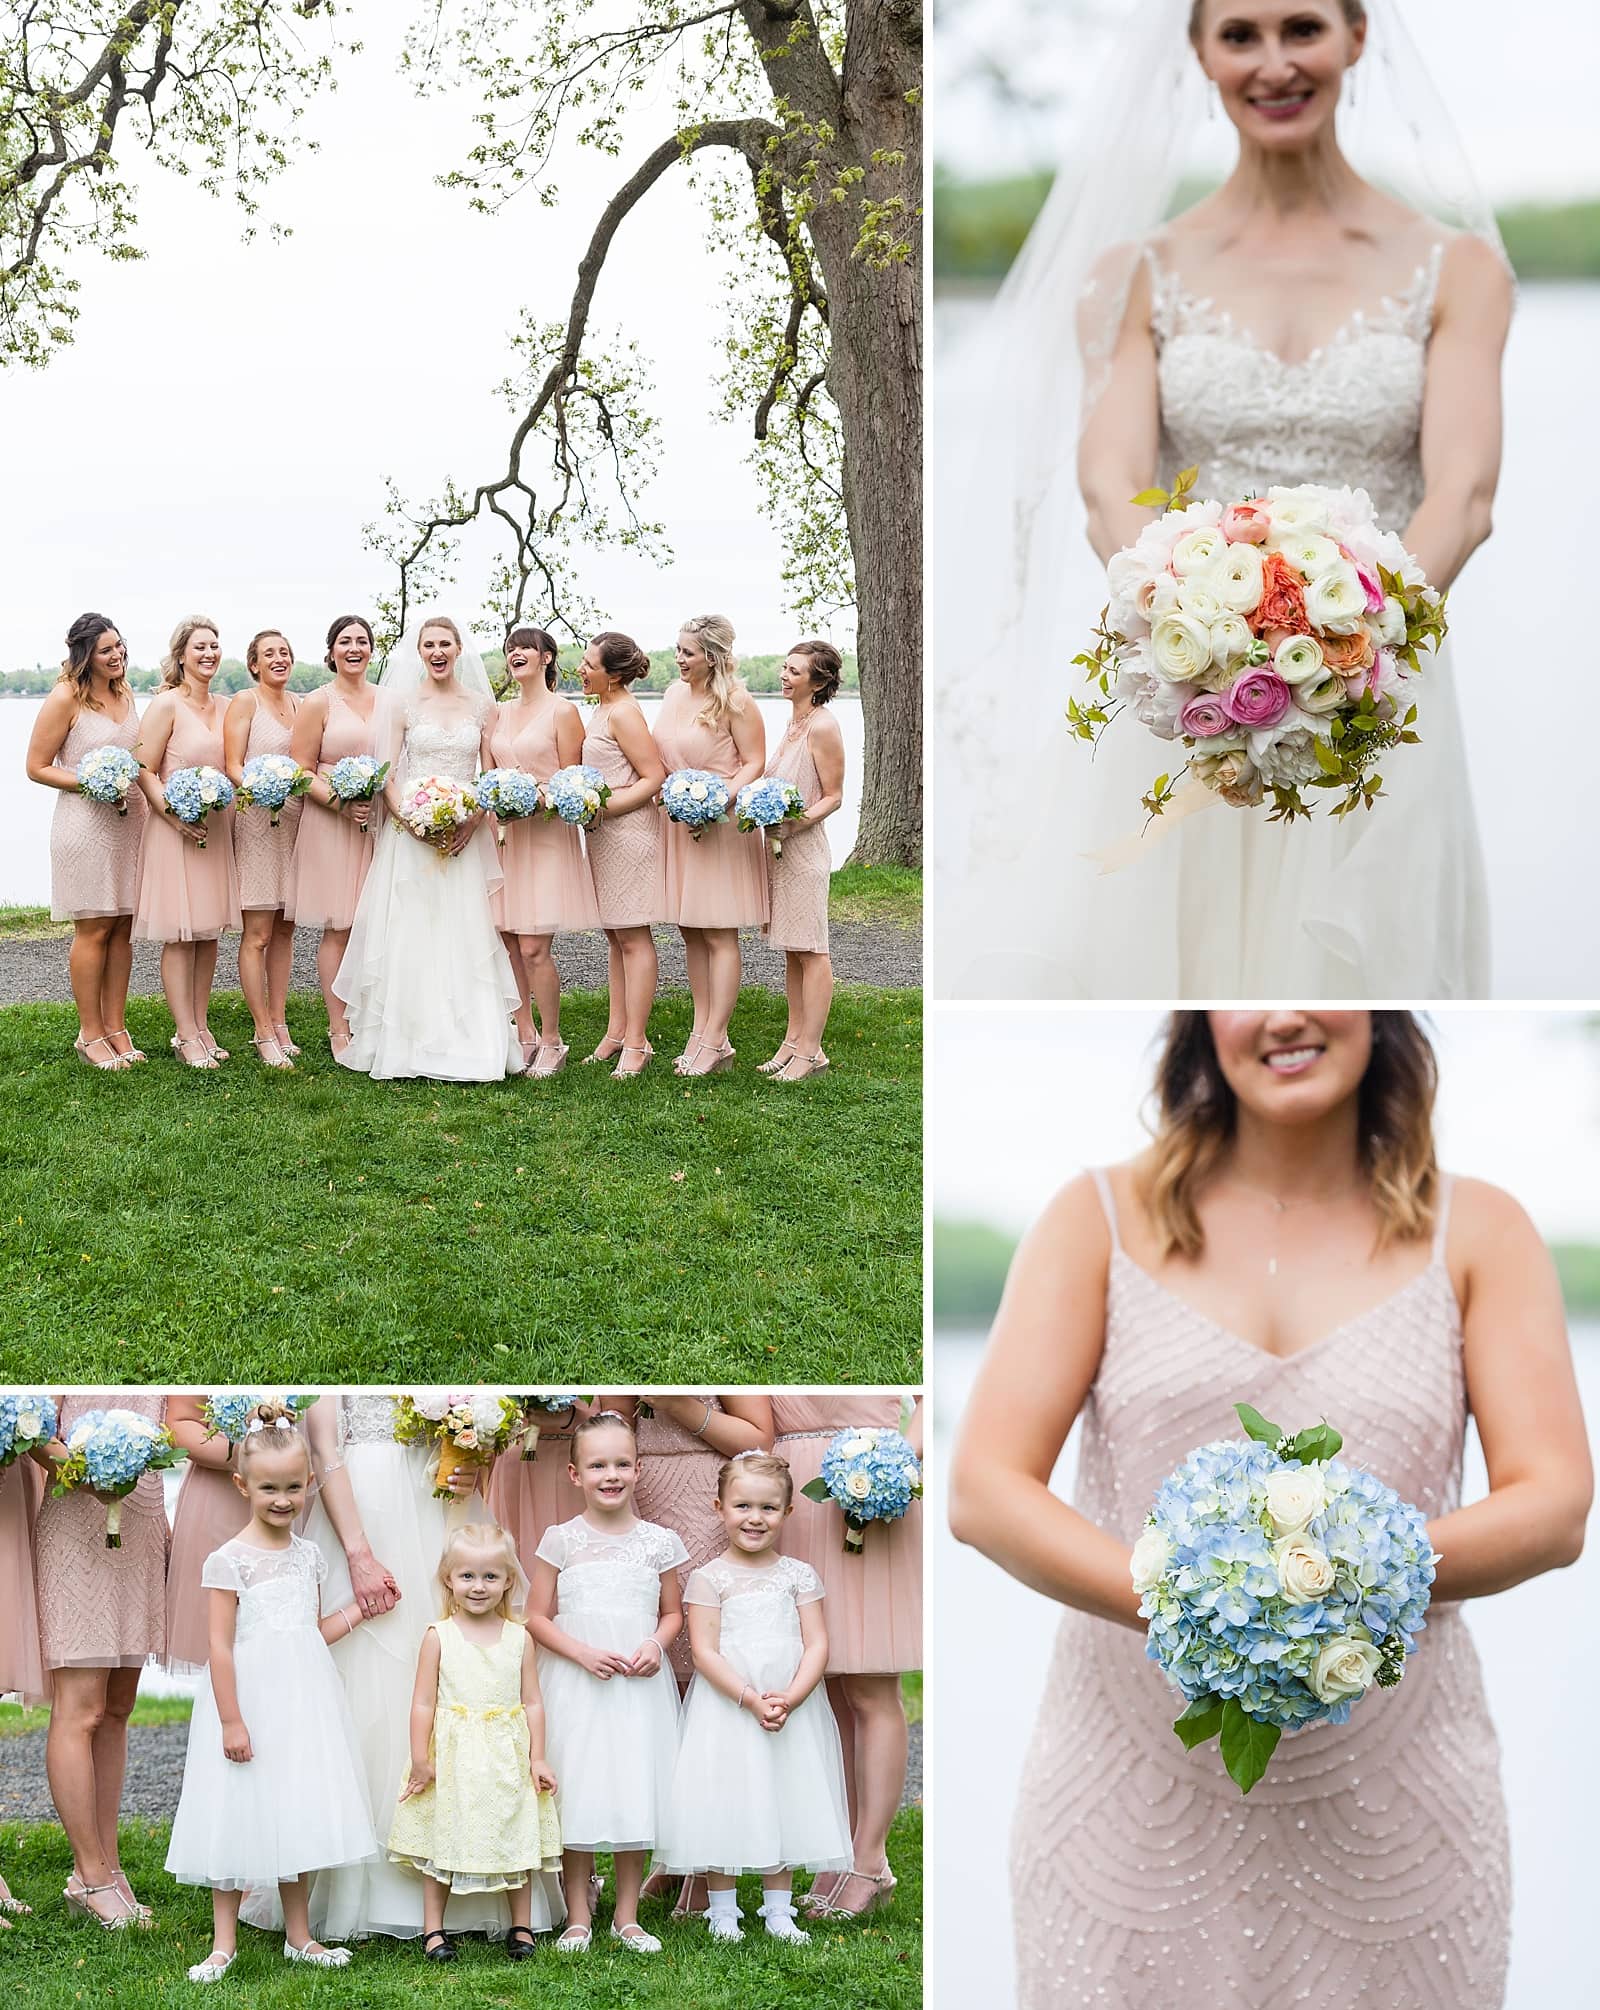 Bridal party portraits, flower girl portraits, bridal bouquet, bridesmaids bouquet, Glen Foerd Mansion wedding